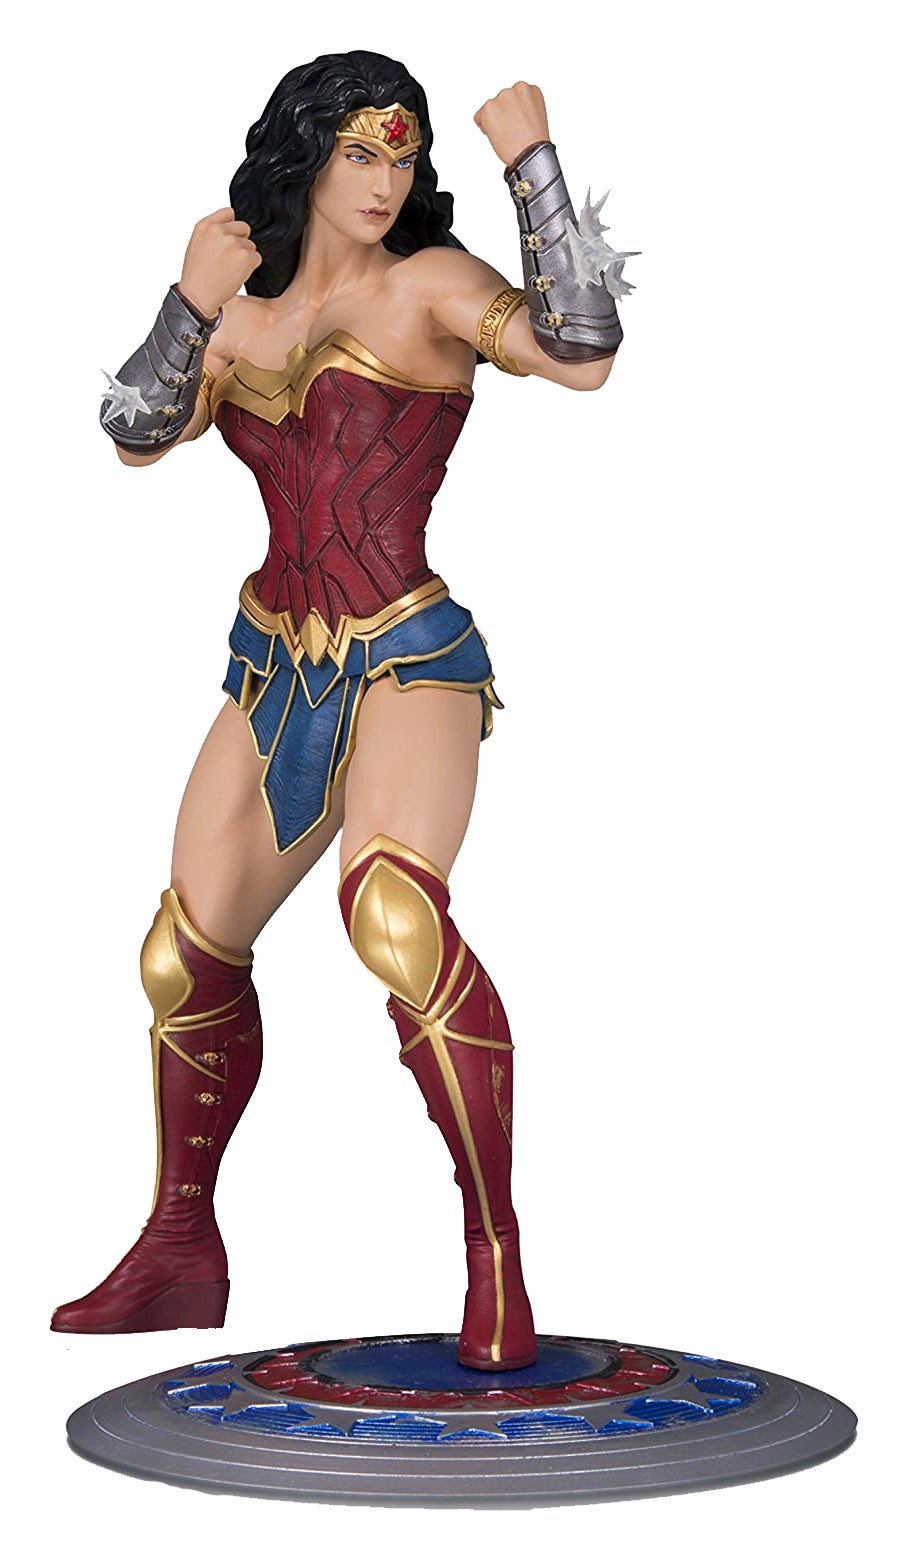 DC Core Wonder Woman PVC Statue by DC Collectibles on Parigi Books